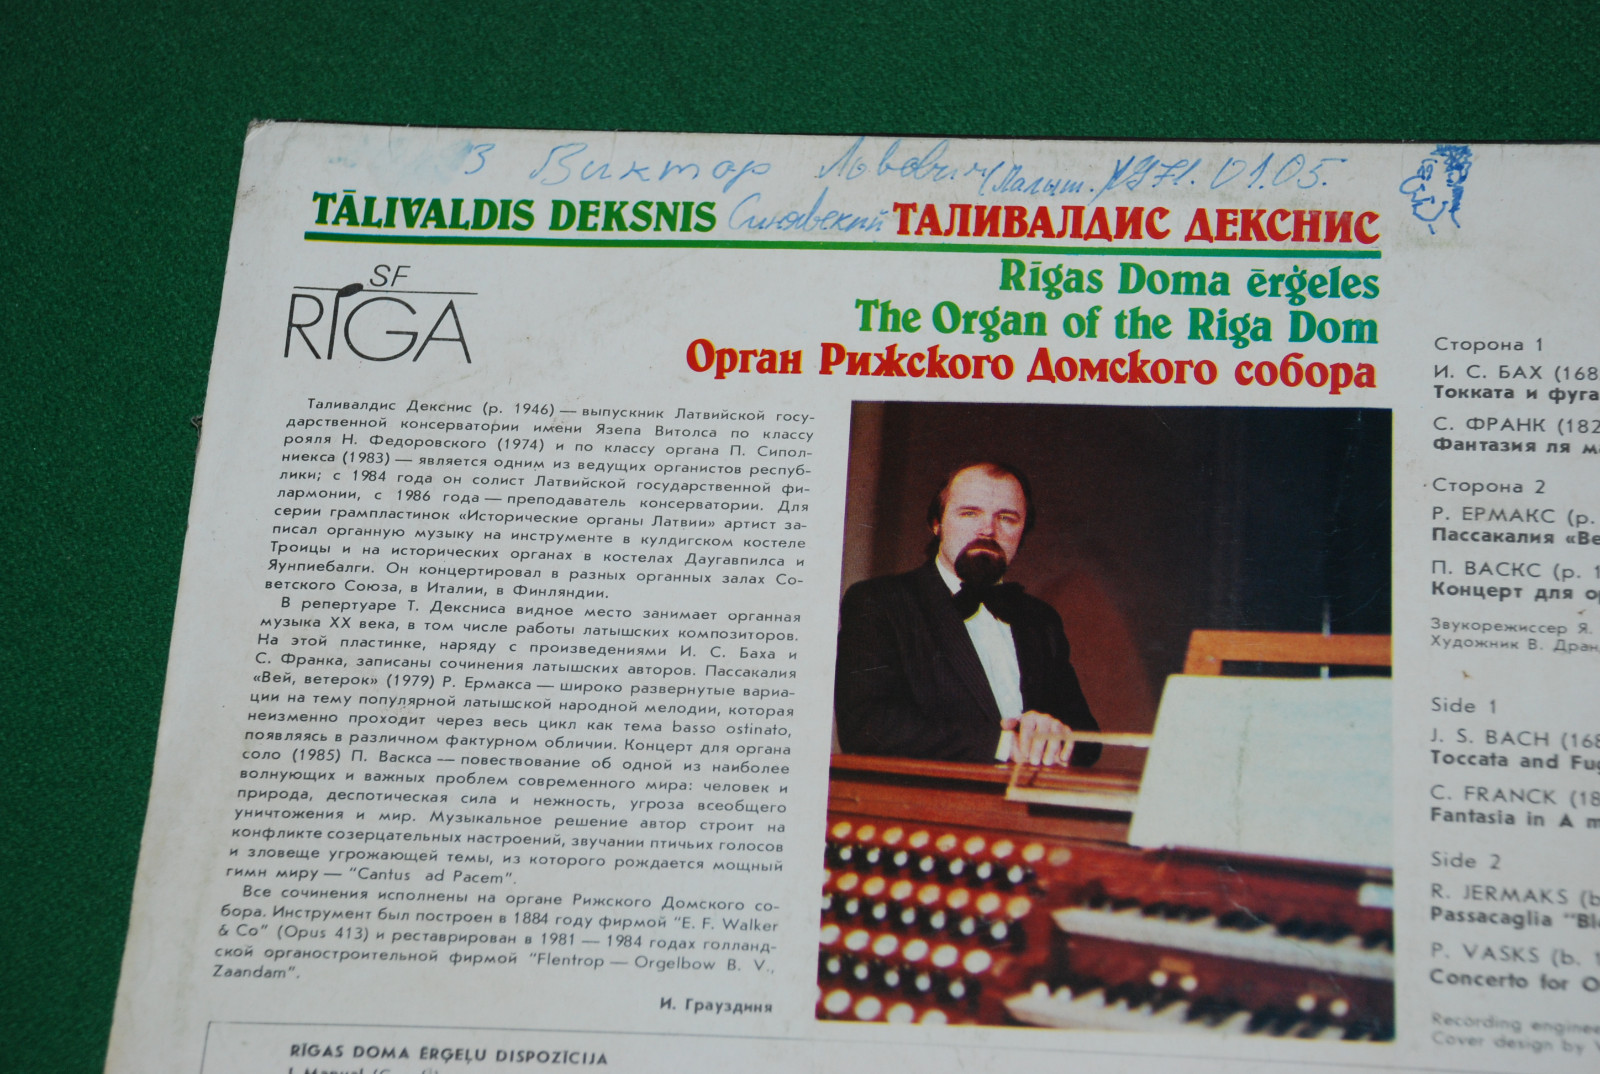 ДЕКСНИС Таливалдис (орган Рижского Домского концертного зала).